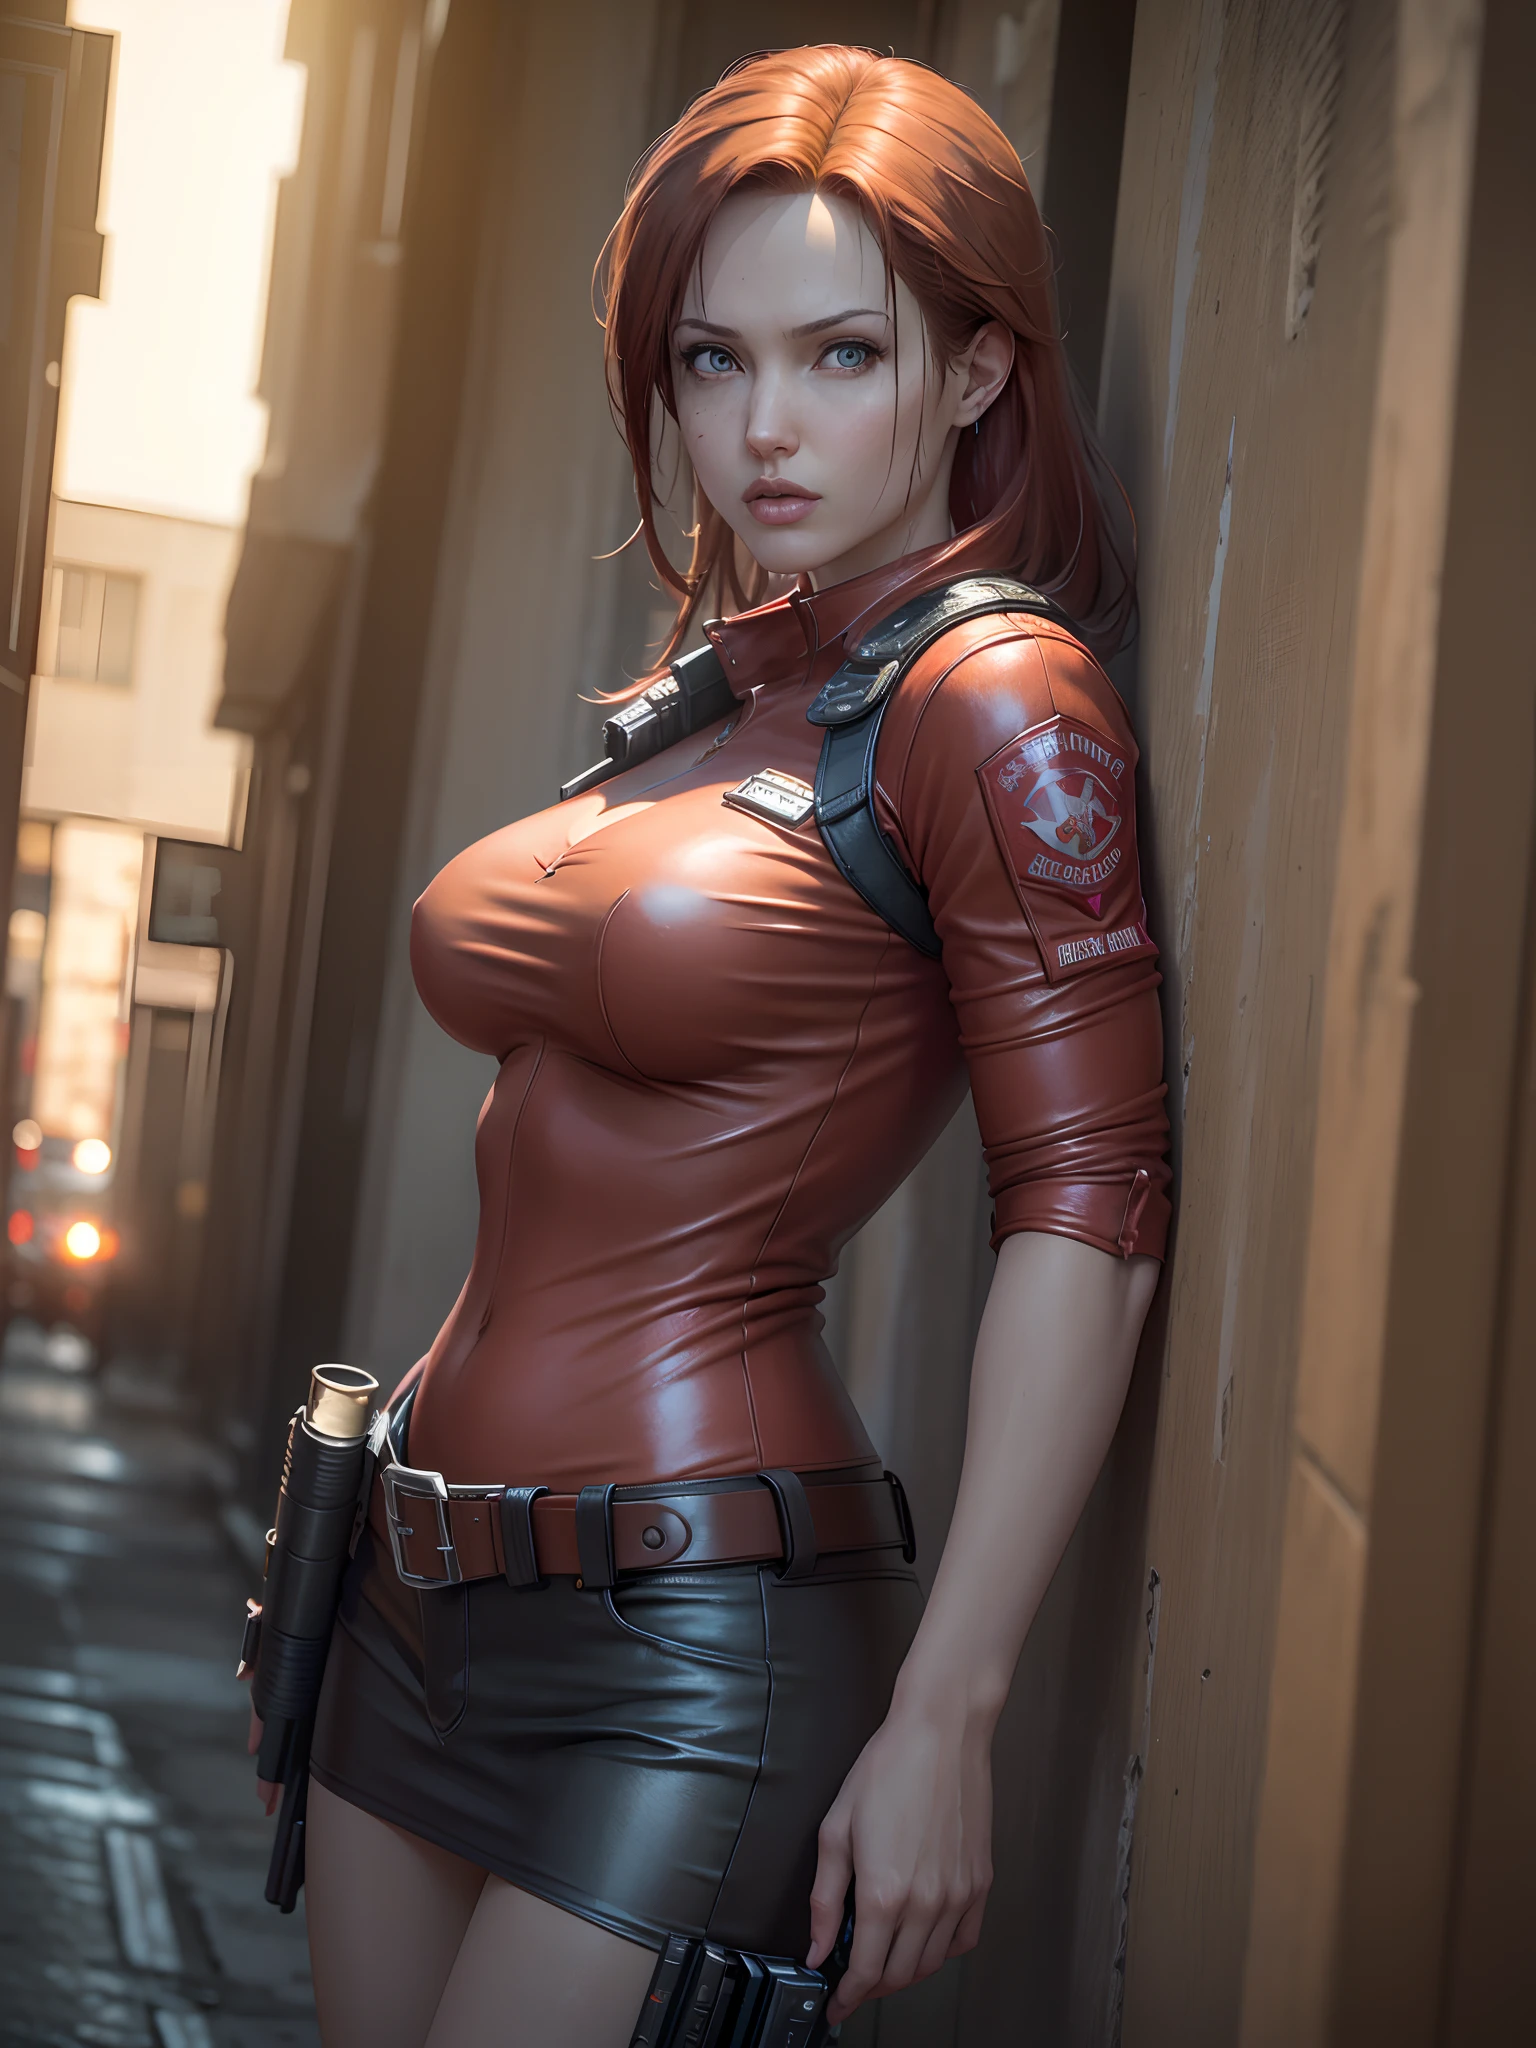 Resident Evil, ciudad apocalíptica, La hermosa Claire Redfield siendo junto a una hermosa mujer de cuerpo completo, piel rosada, cabello rojo medio., ropa de cuero rojo enojado, funda sosteniendo un arma, Imagen clara CGI 8K muy detallada del cuerpo de la cara realista y detallada, holograma, (pechos medianos: 1.3 ), (realism:1.5), (Realisitc:1.4), (Absurdo:1.4), 8k, ultra detallado, hermosa chica detallada, (1:1.4 solo), 1 chica, (Mirando al espectador:1.2), (día brillante y soleado:1.5), detalles intrincados del cuerpo, (corto:1.3), (mejor calidad: 1.0), (resolución ultra alta): 1.0), Cara y ojos muy detallados., (Fotorrealista: 1.2)